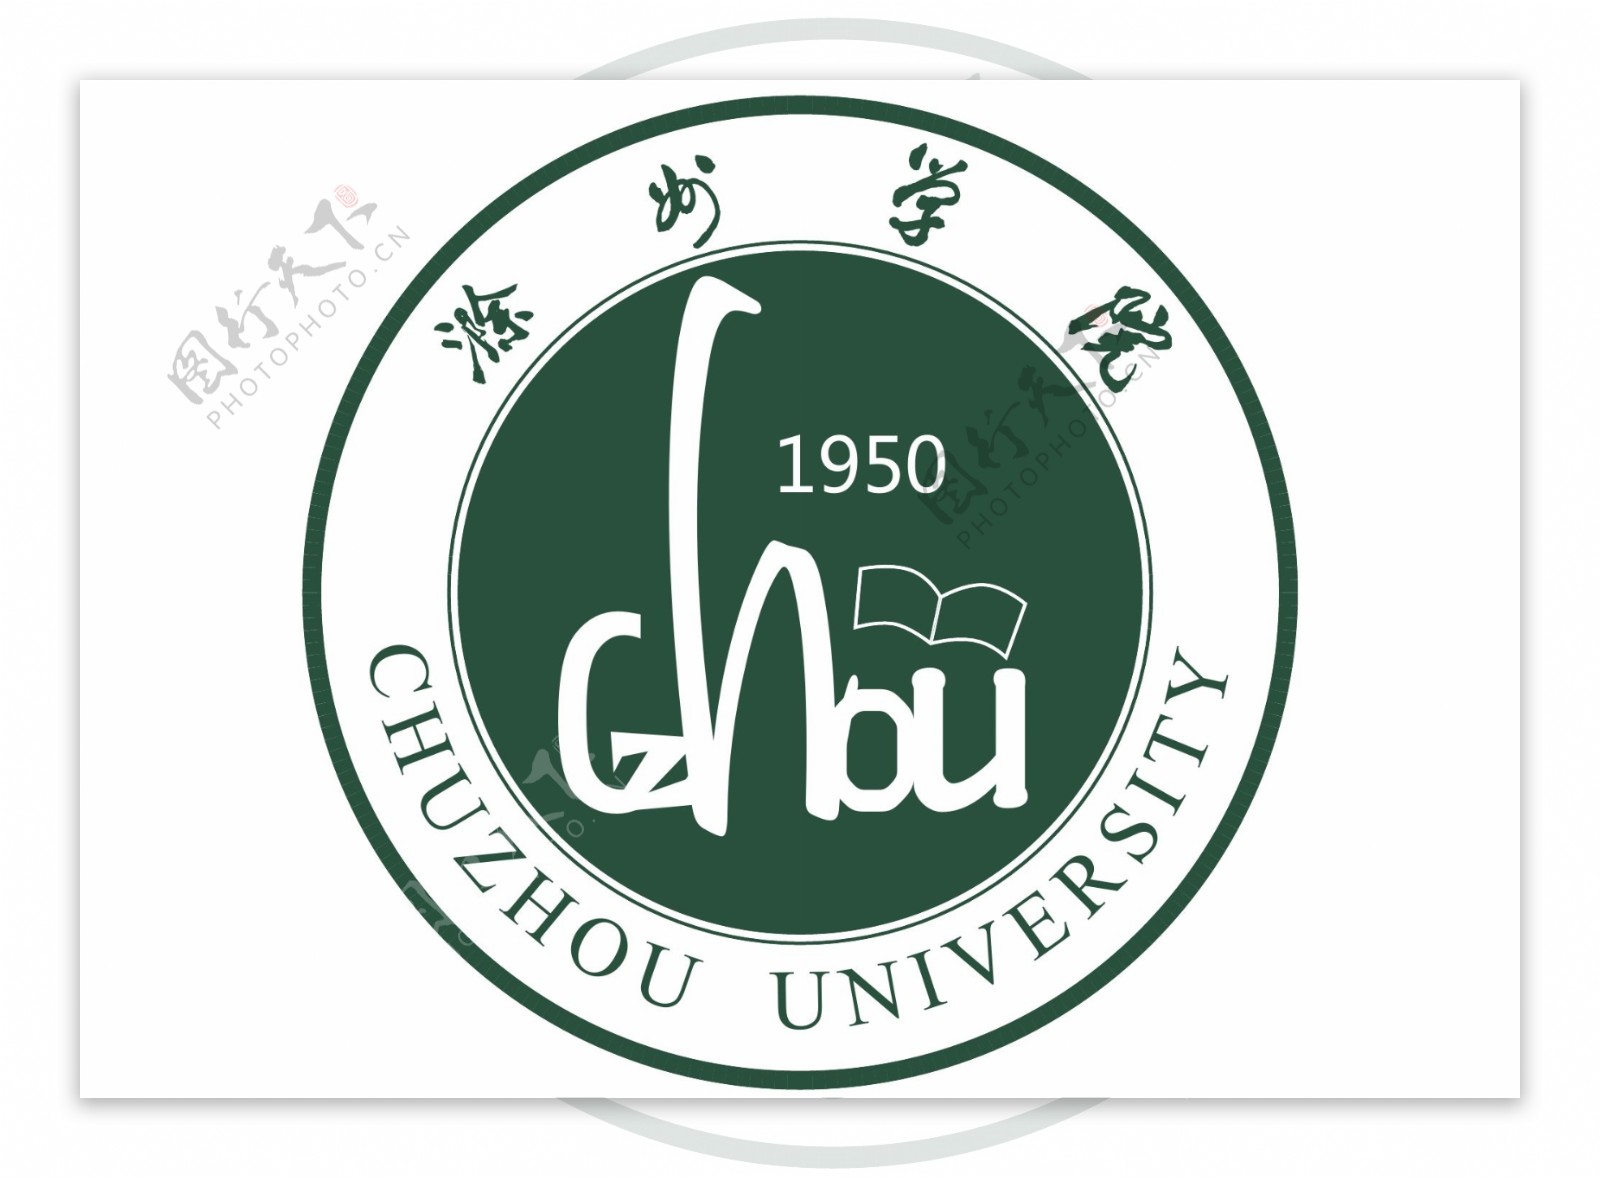 滁州学院新校徽